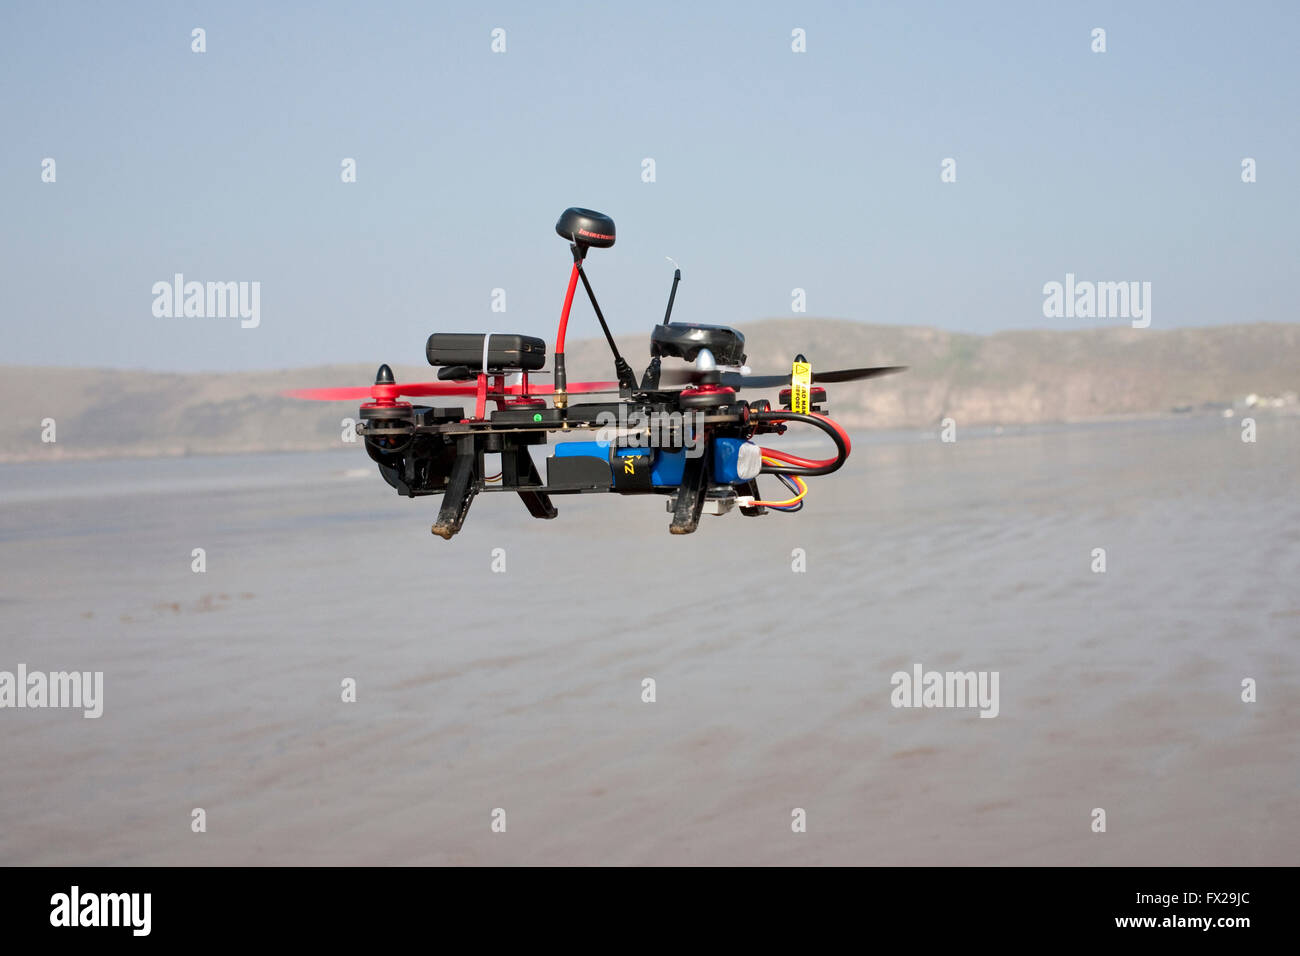 Drone contrôlé par radio piloté sur une plage vide Banque D'Images